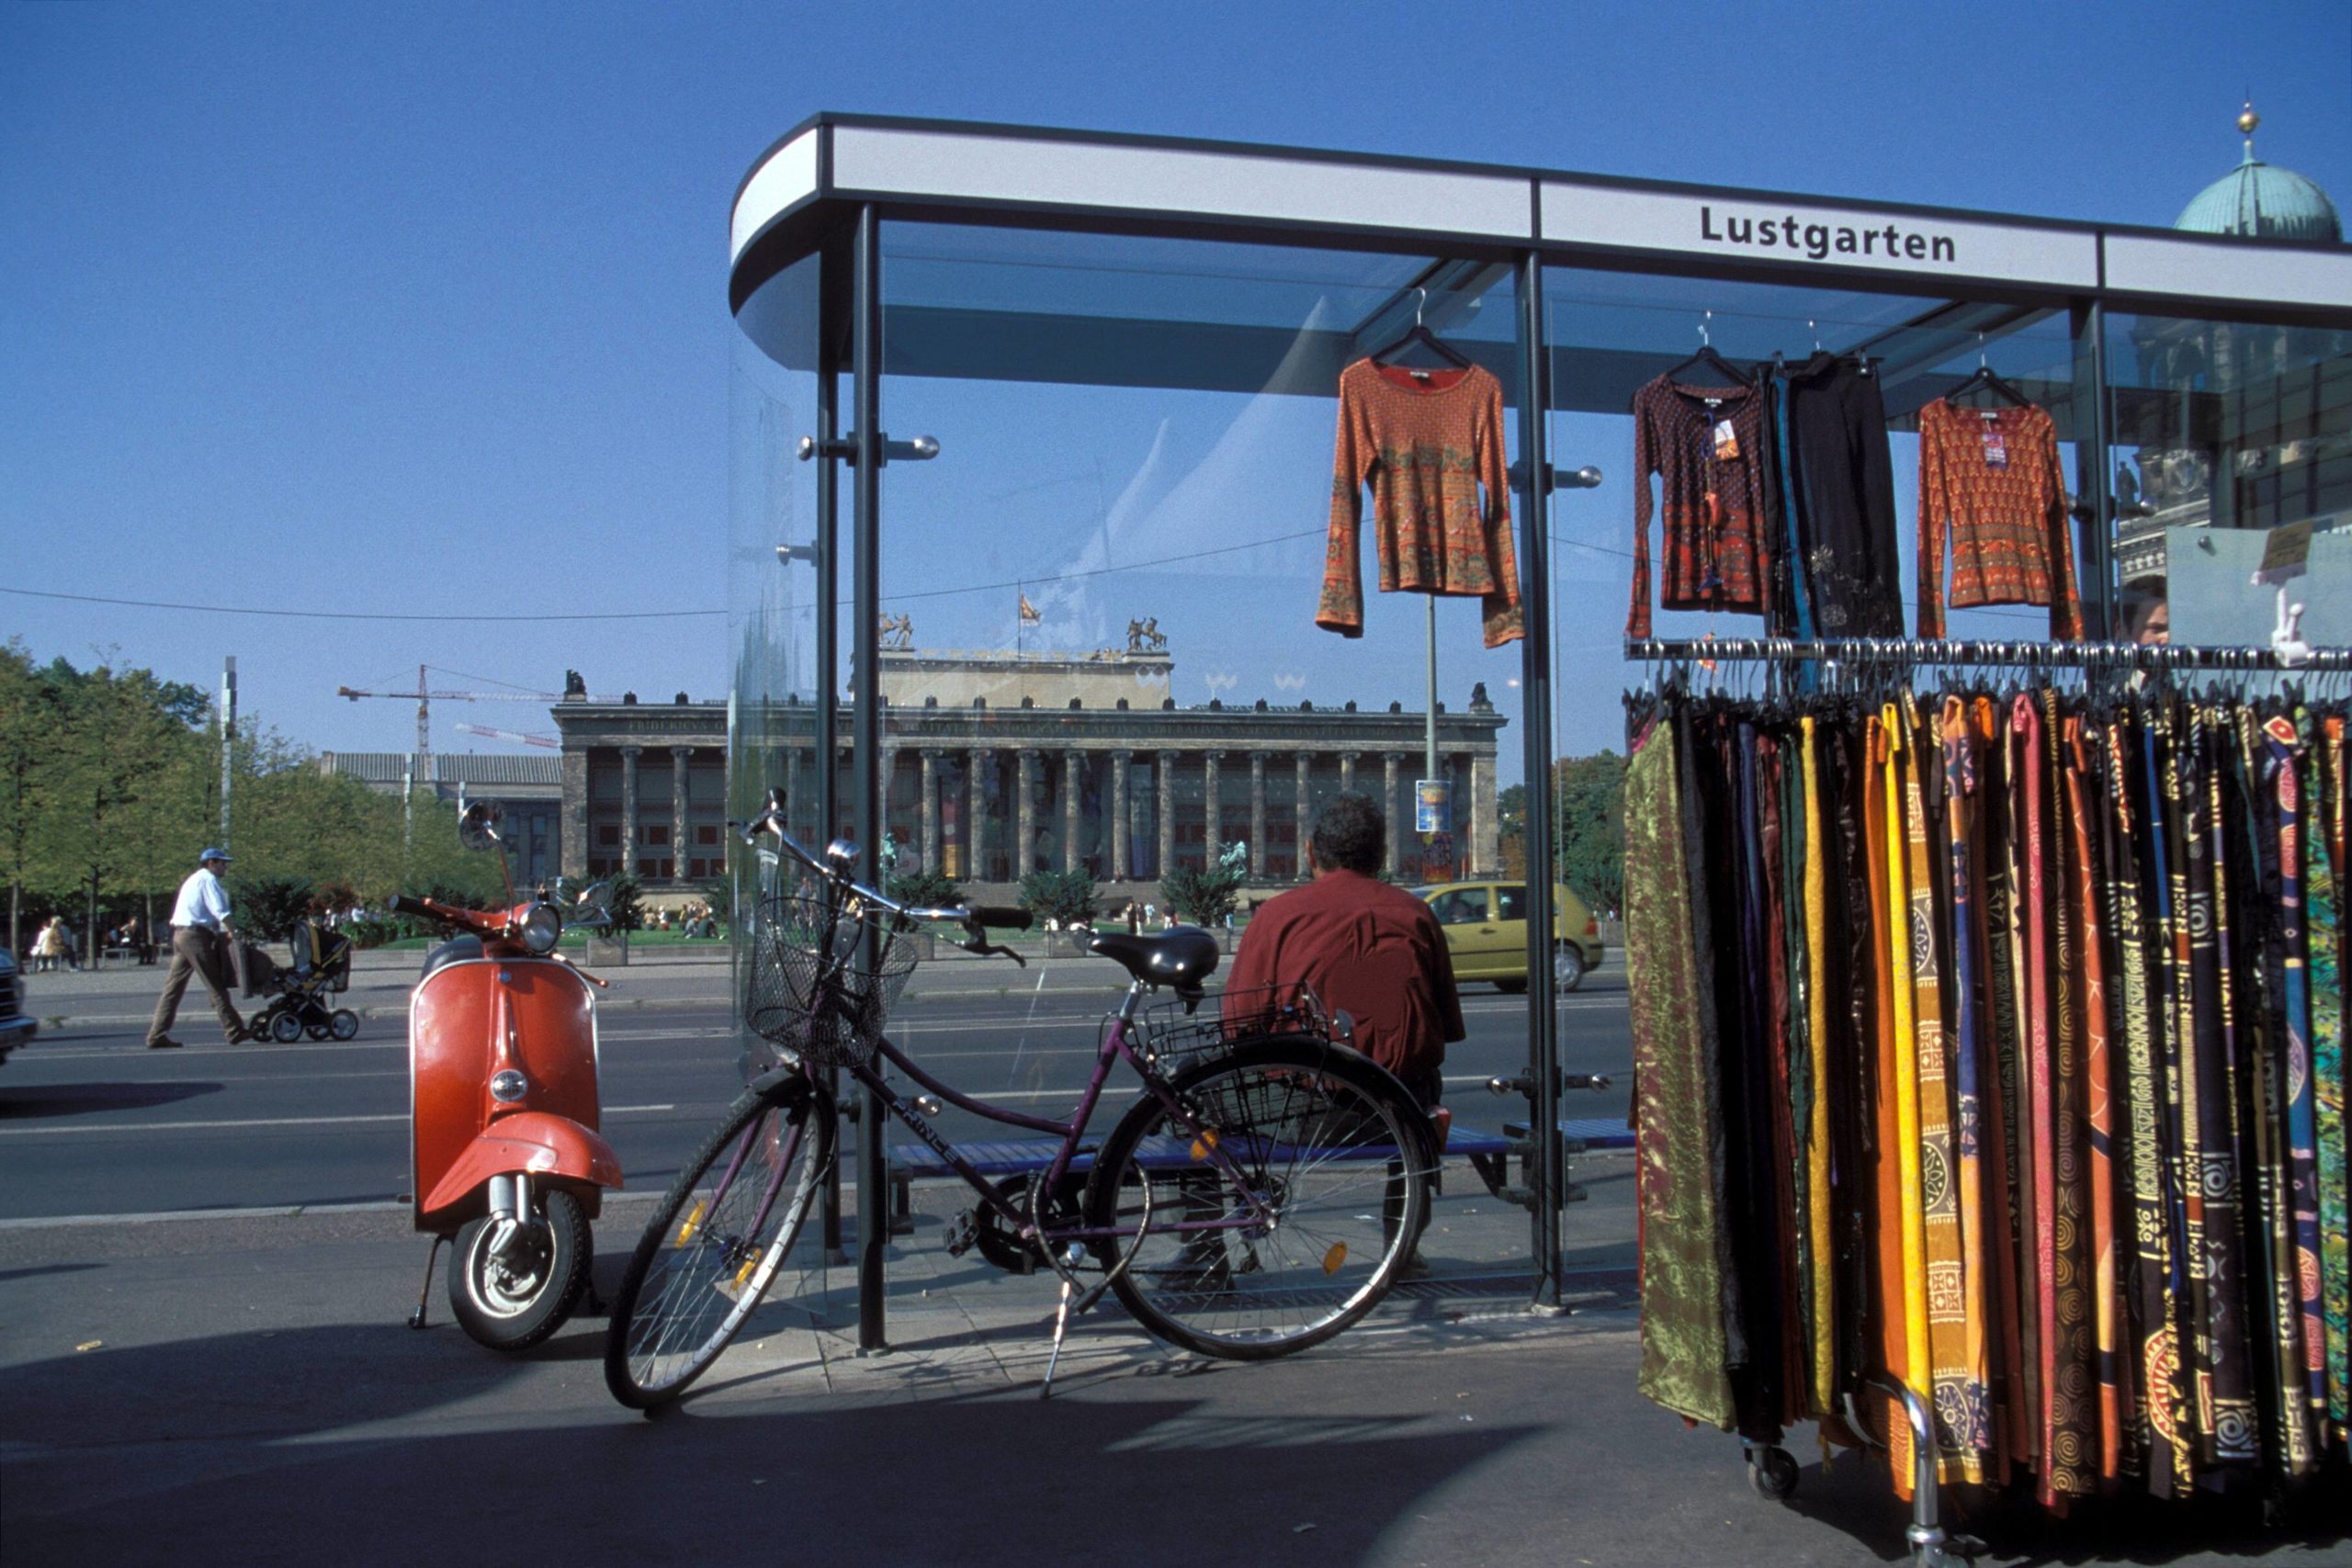 Ein Händler nutzt die Bushaltestelle am Lustgarten als Kleiderständer für seine Ausstellungsstücke. Foto: Imago/Steinach